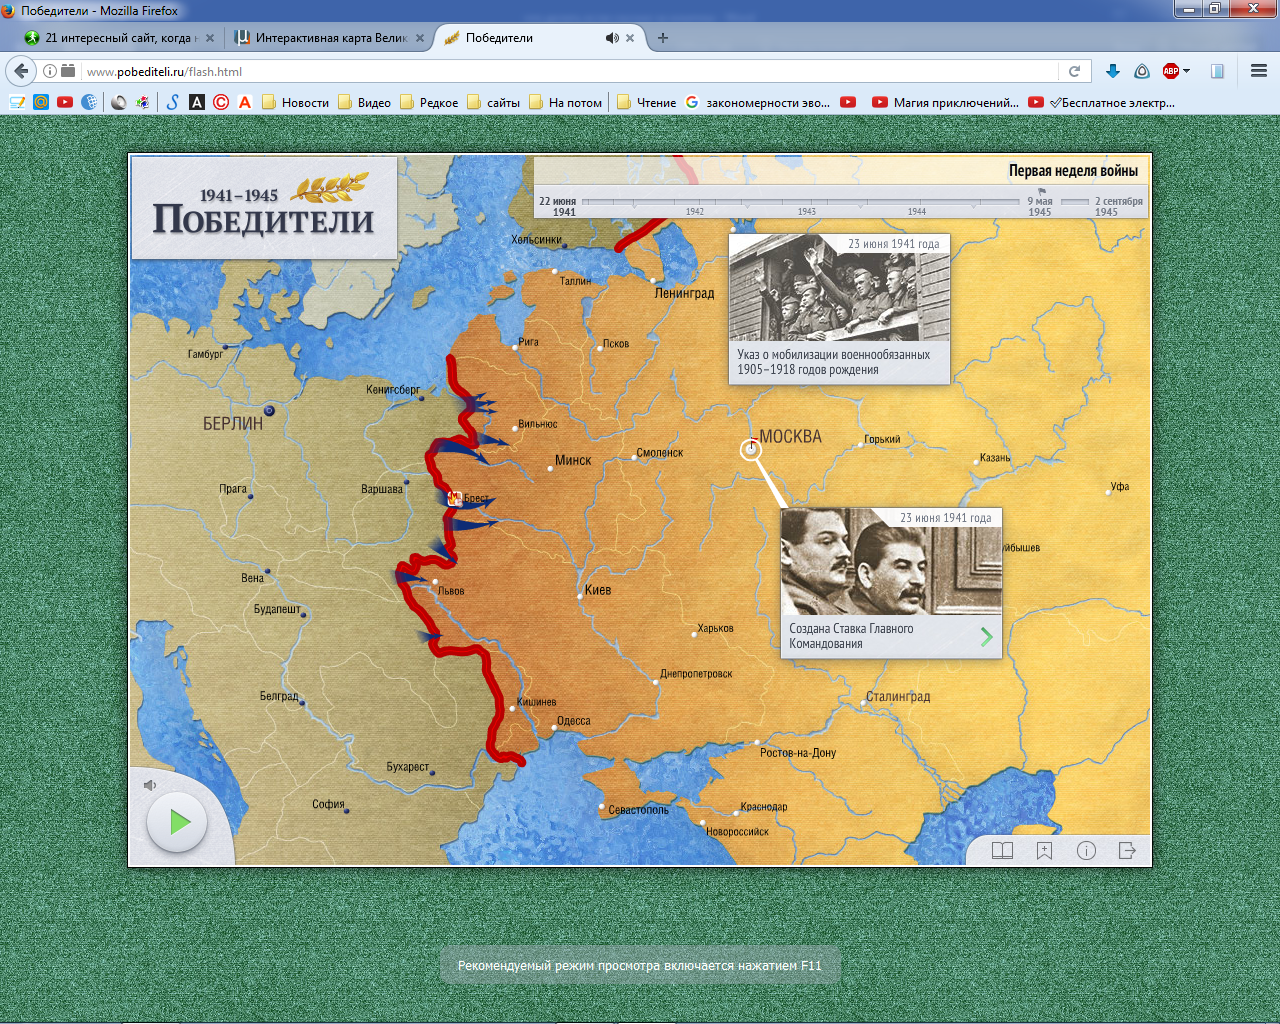 Рис. 15 – Визуализация событий 1941-1945